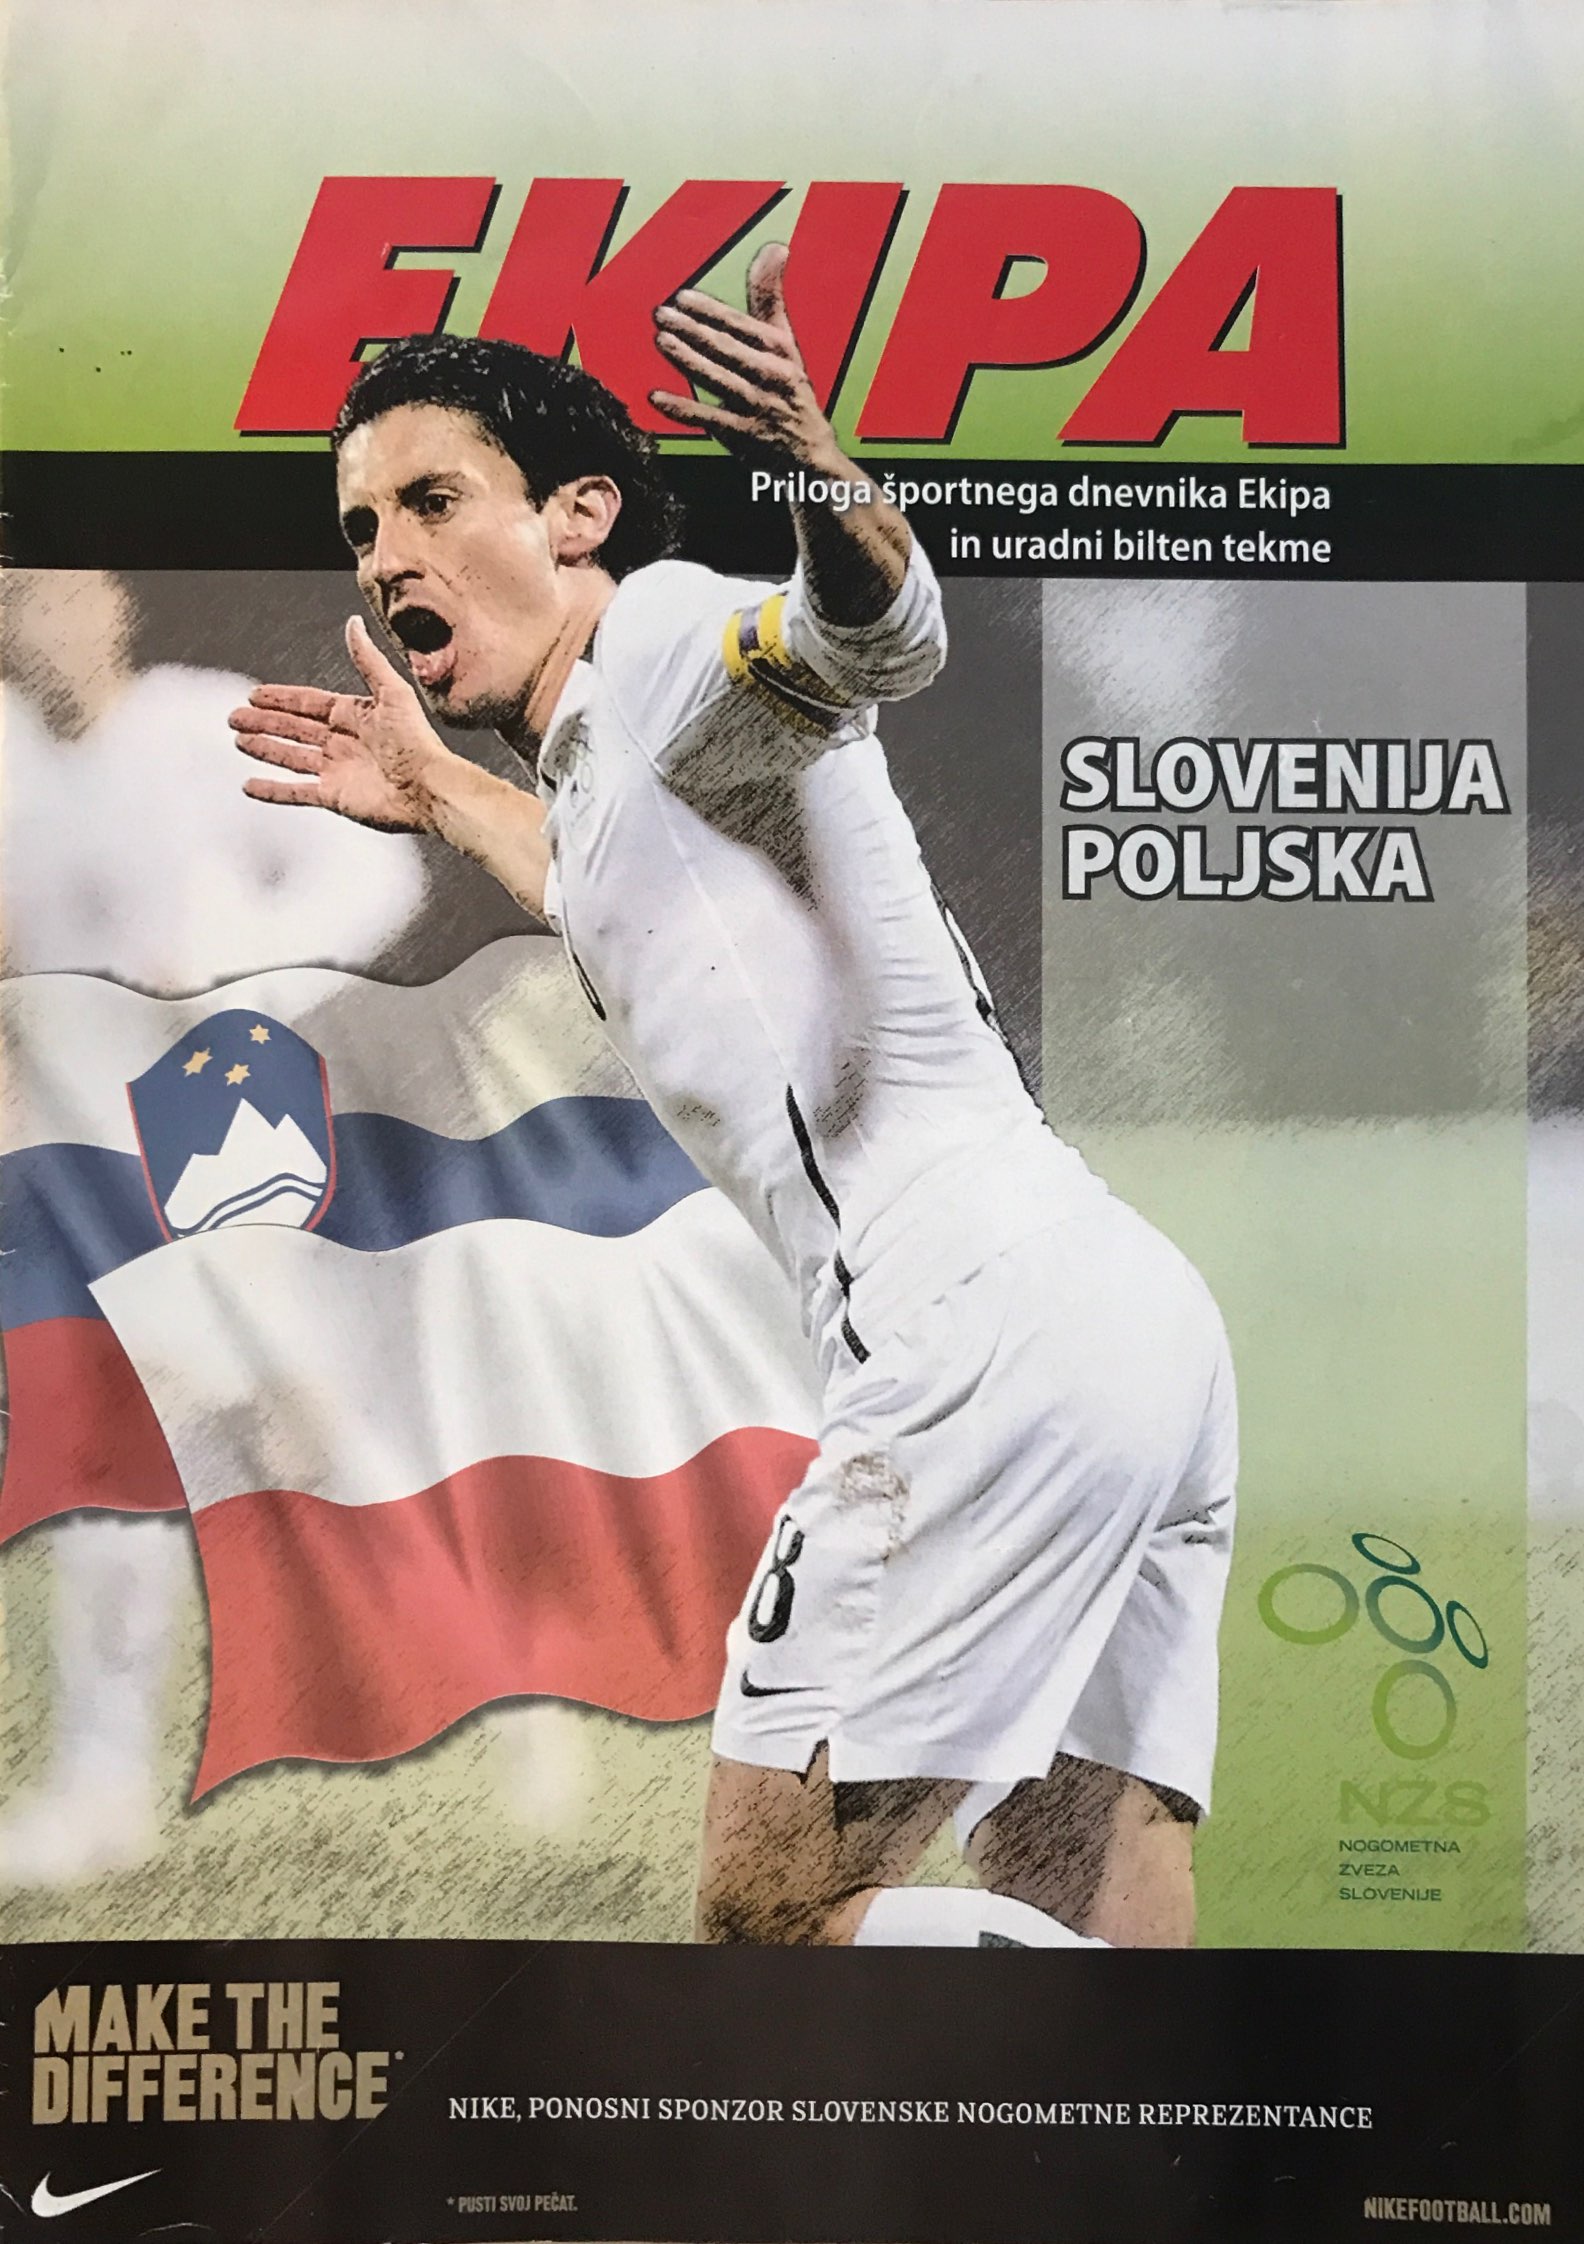 Program meczowy Słowenia - Polska 3:0 (09.09.2009).